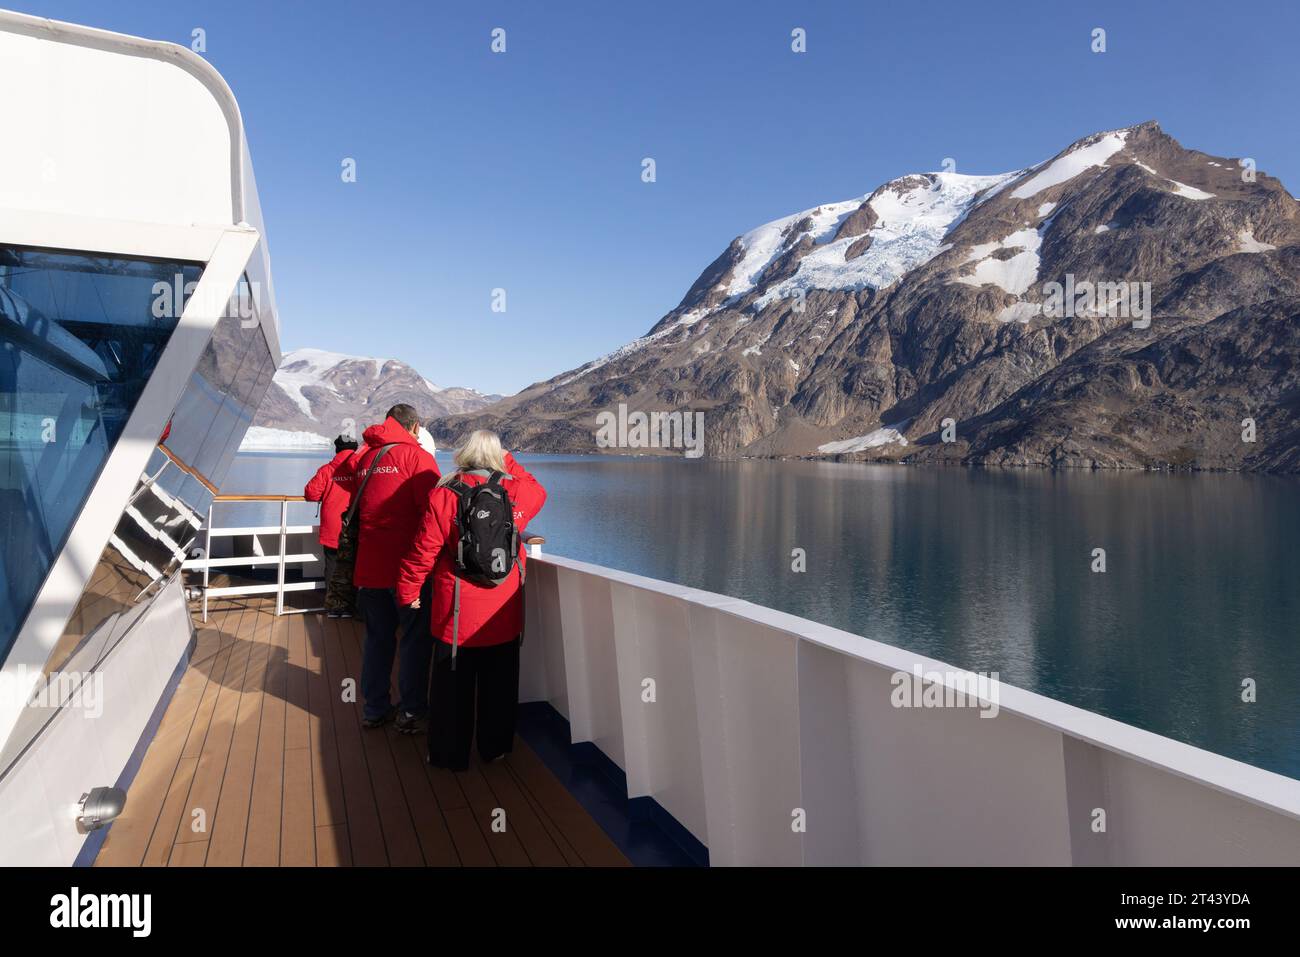 Touristen auf einem Silversea-Kreuzfahrtschiff im Skjoldungen Fjord, Ostgrönland, mit Blick auf die Landschaft. Arktis-Kreuzfahrt, Arctic Travel. Grönland Tourismus Stockfoto